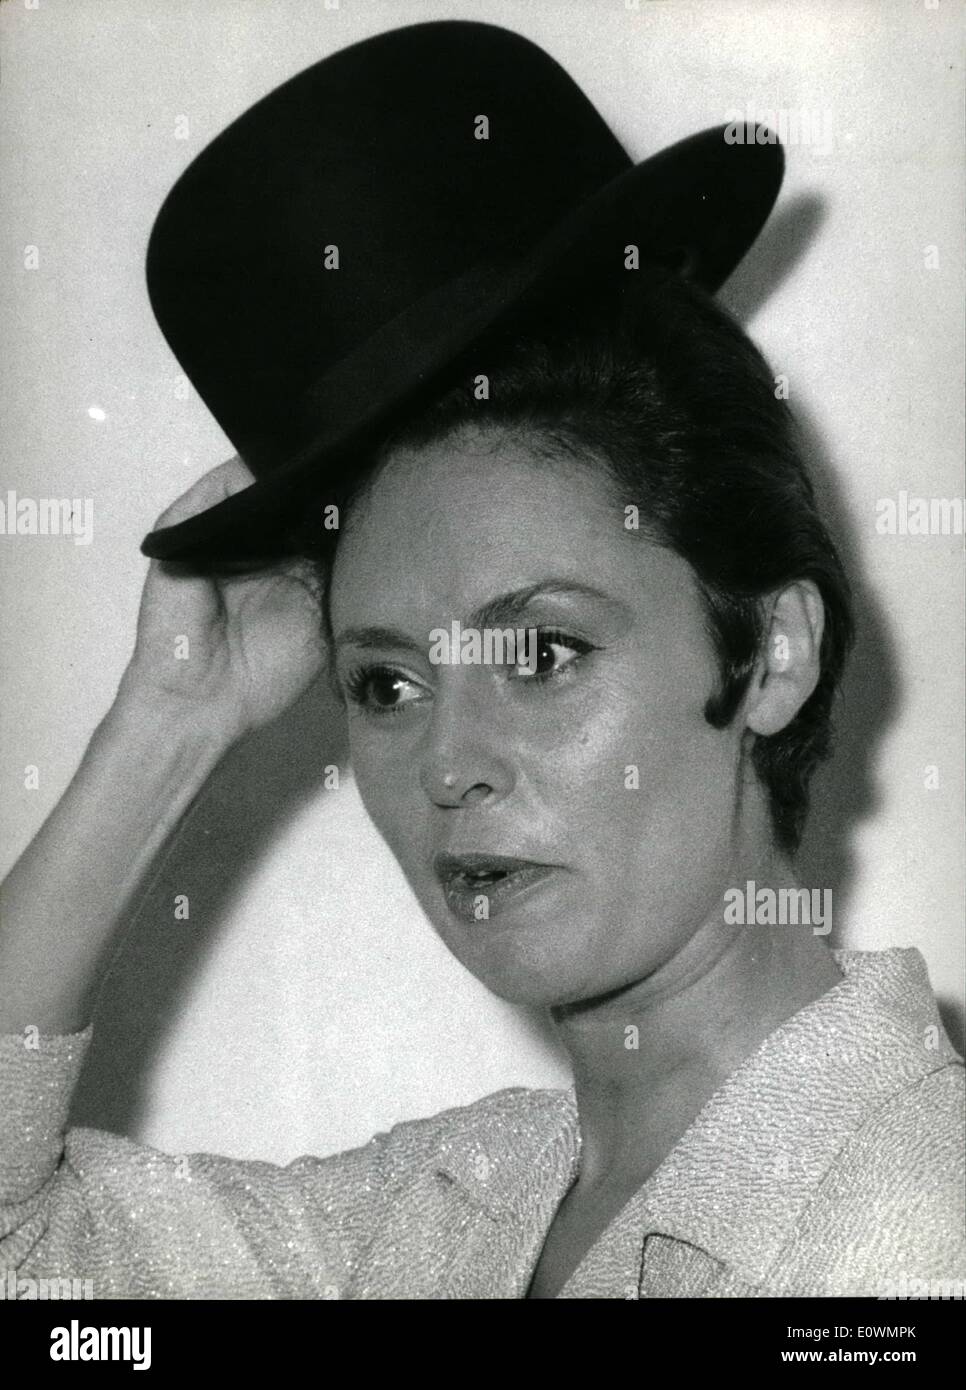 Agosto 08, 1963 - Caterina Valente, il famoso cantante tedesca, era ospite la scorsa notte al musical show che ha avuto luogo in un aperto - Teatro di Roma. La foto mostra la zona funn espressione della ''briva'' attrice. Foto Stock